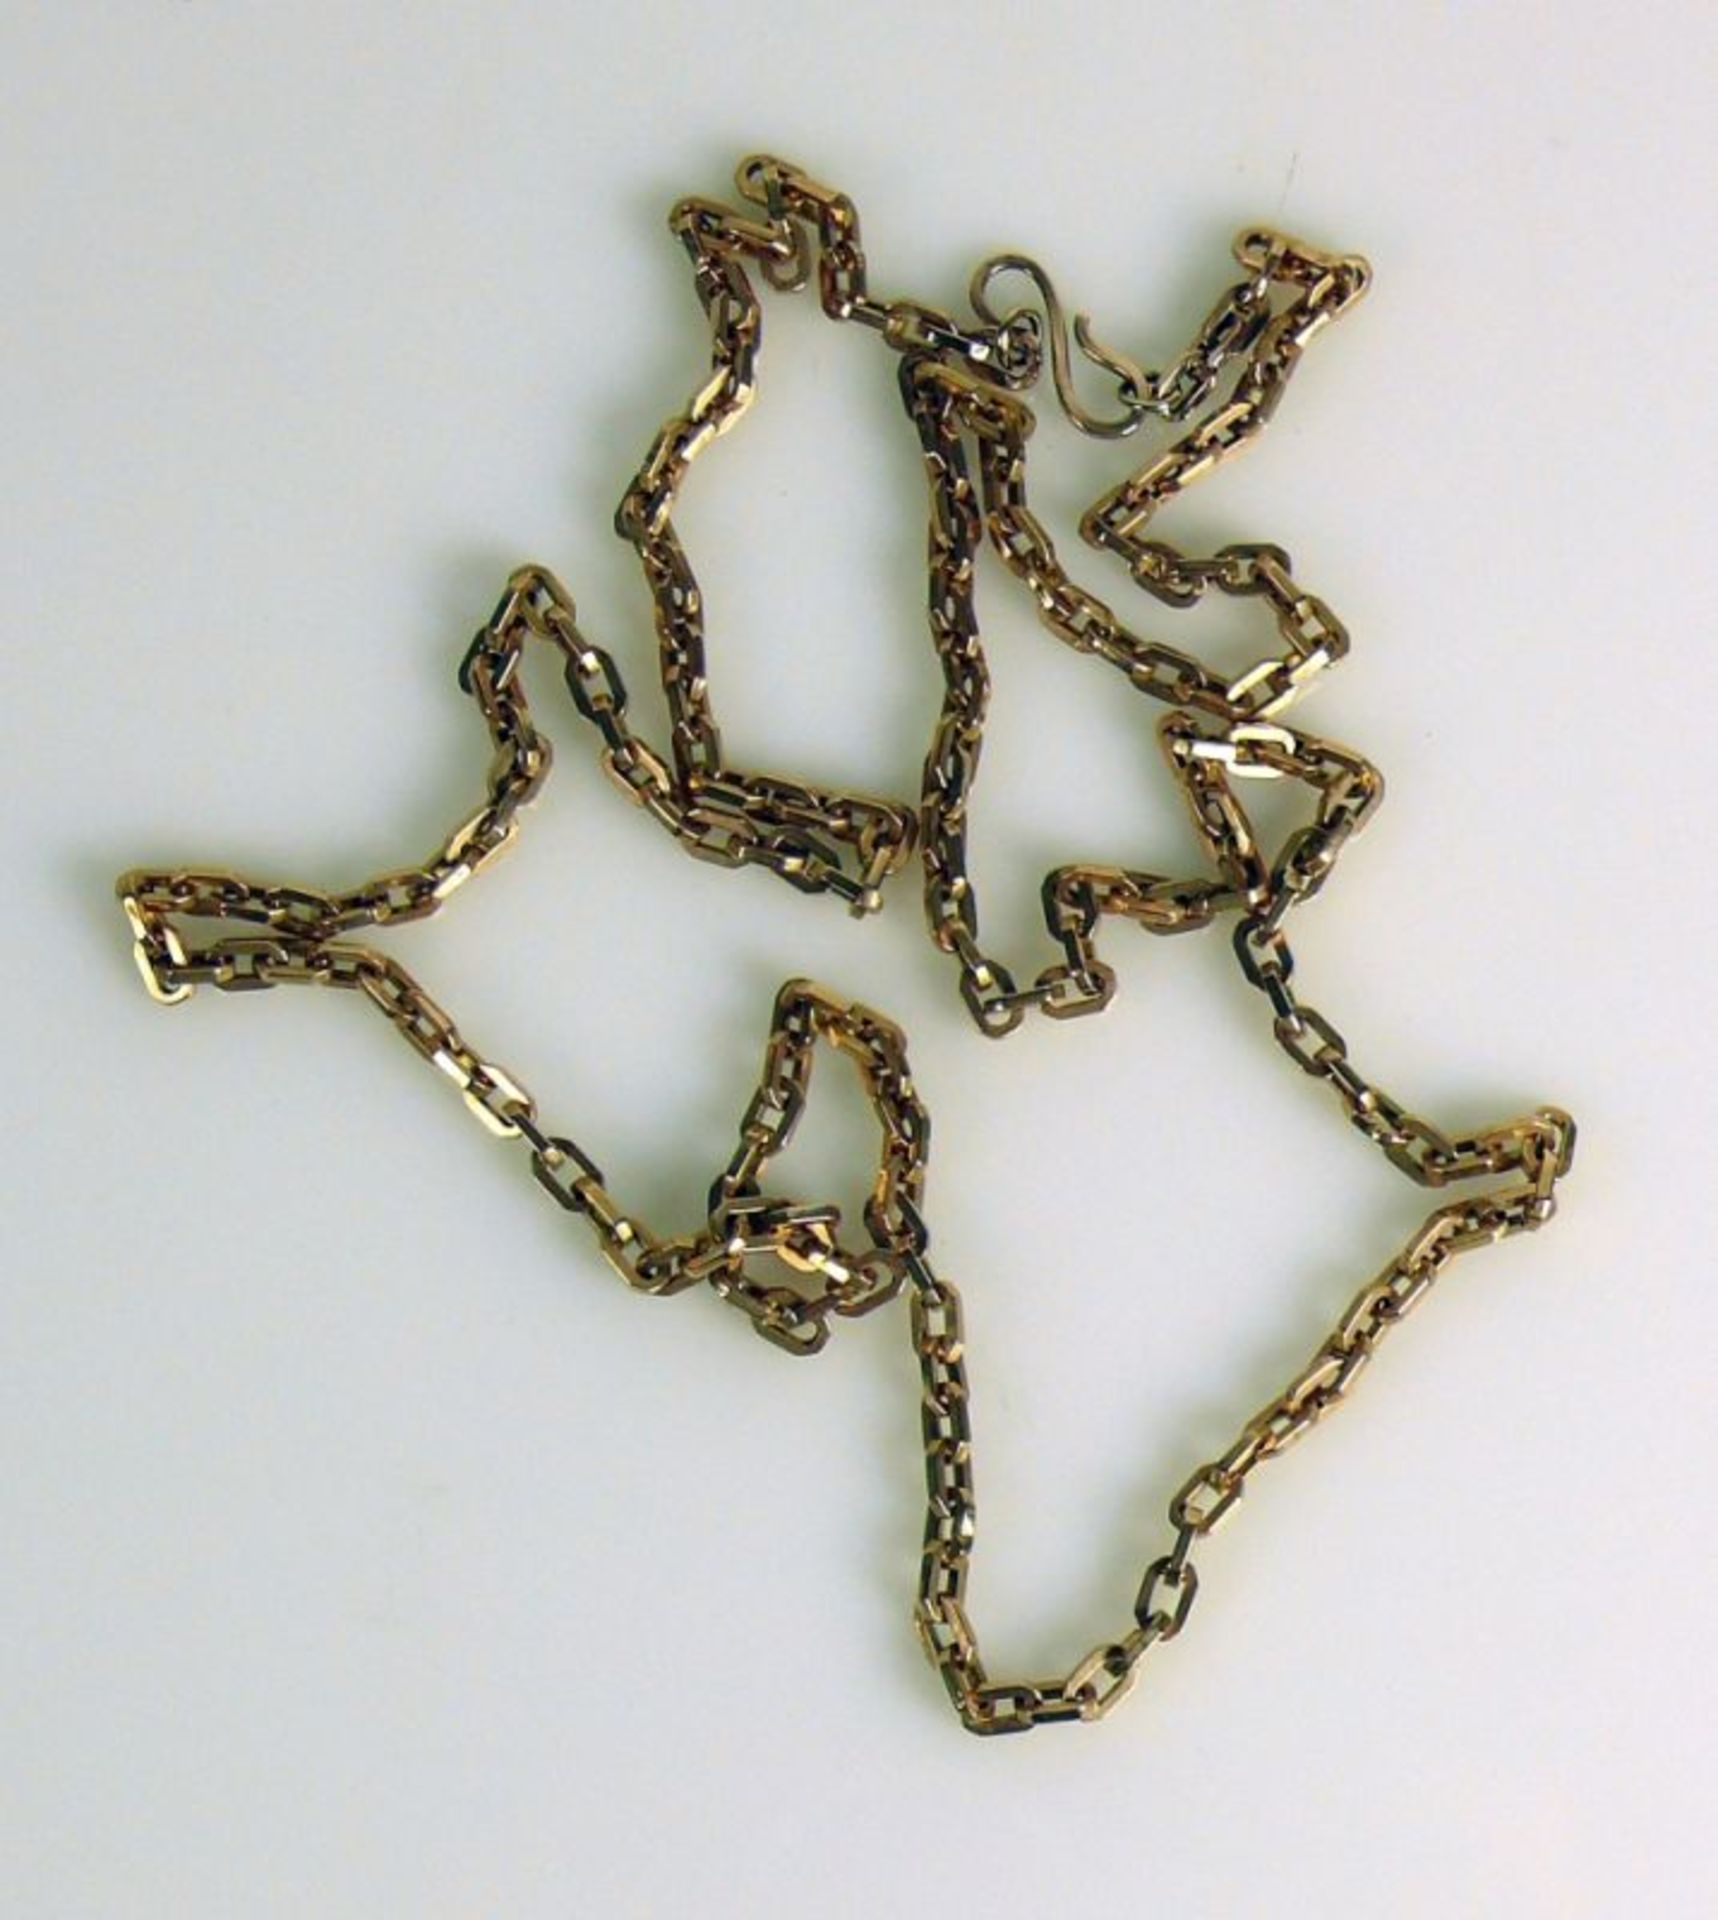 Halskette 14ct GG; Gliederform; L: 90 cm; 18g - Bild 2 aus 2